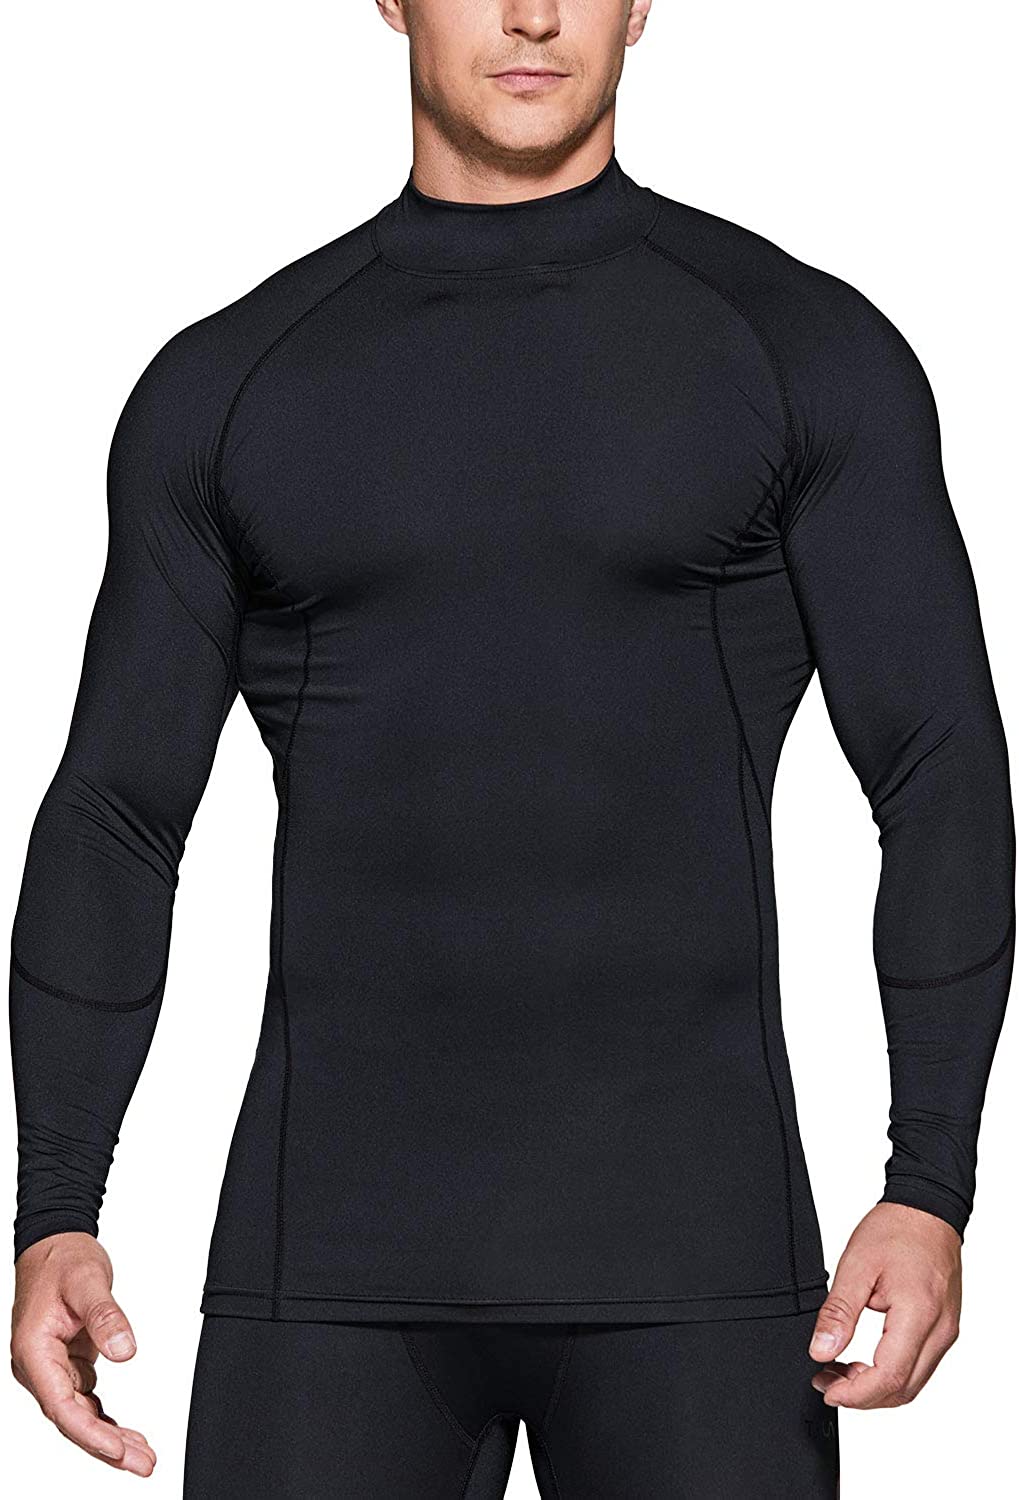 Hommes Entraînement Mock Neck Compression Sous-vêtement à manches longues T-shirt Cool Dry Noir 